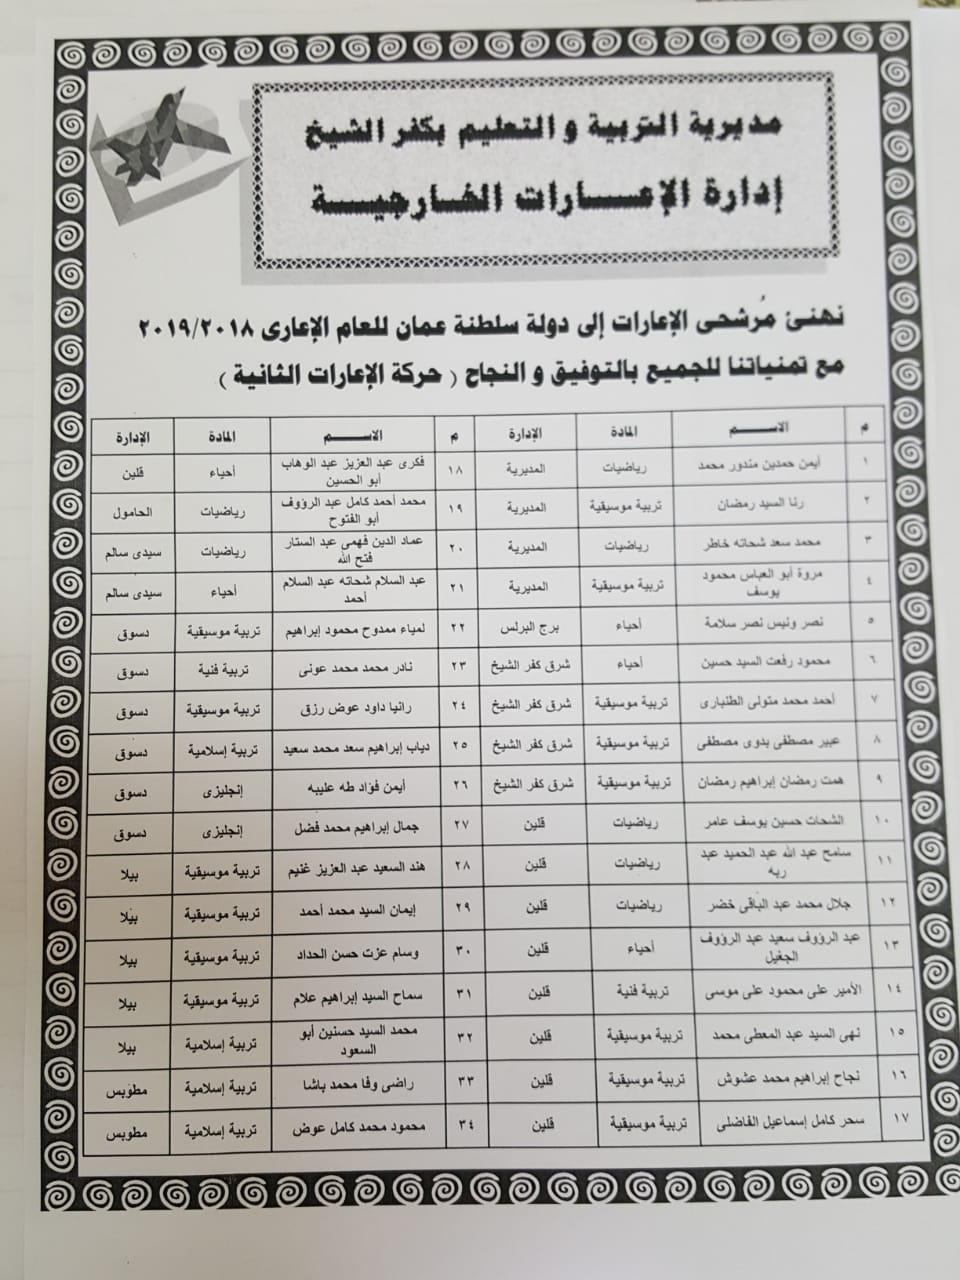 3- اعارة 34 معلم ومعلمه لدولة سلطجنة عمان